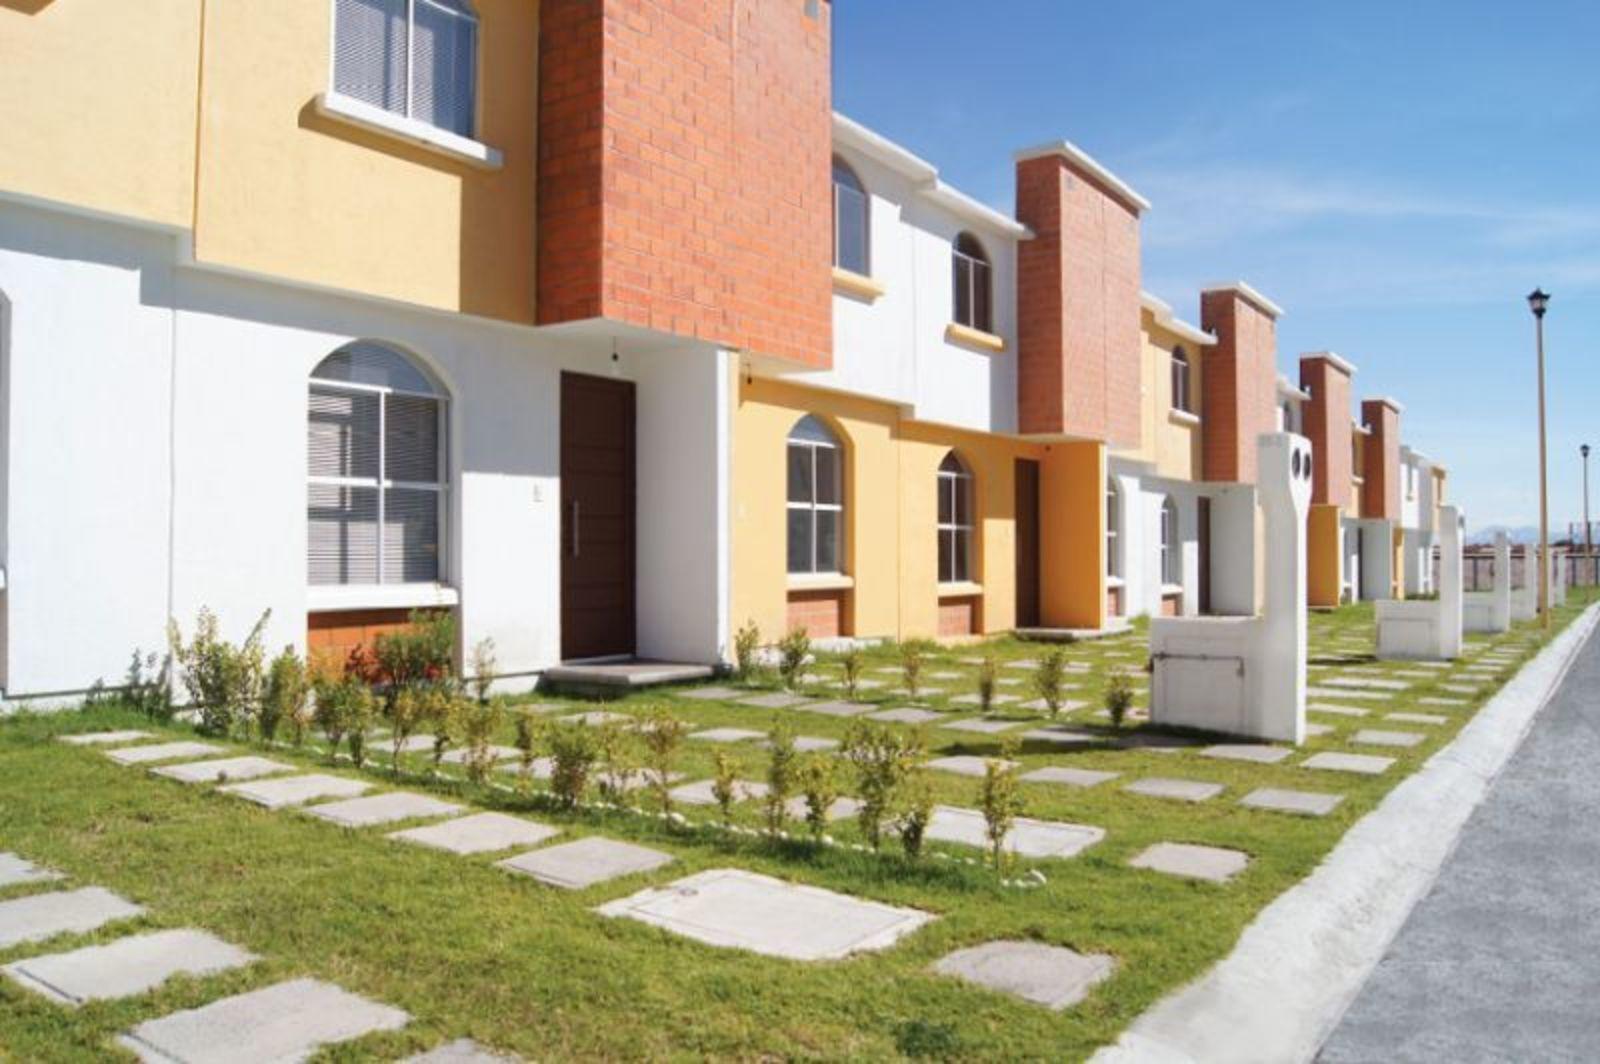 FOVISSSTE construirá viviendas con conectividad y movilidad urbana en S.L.P  – Inmobiliare